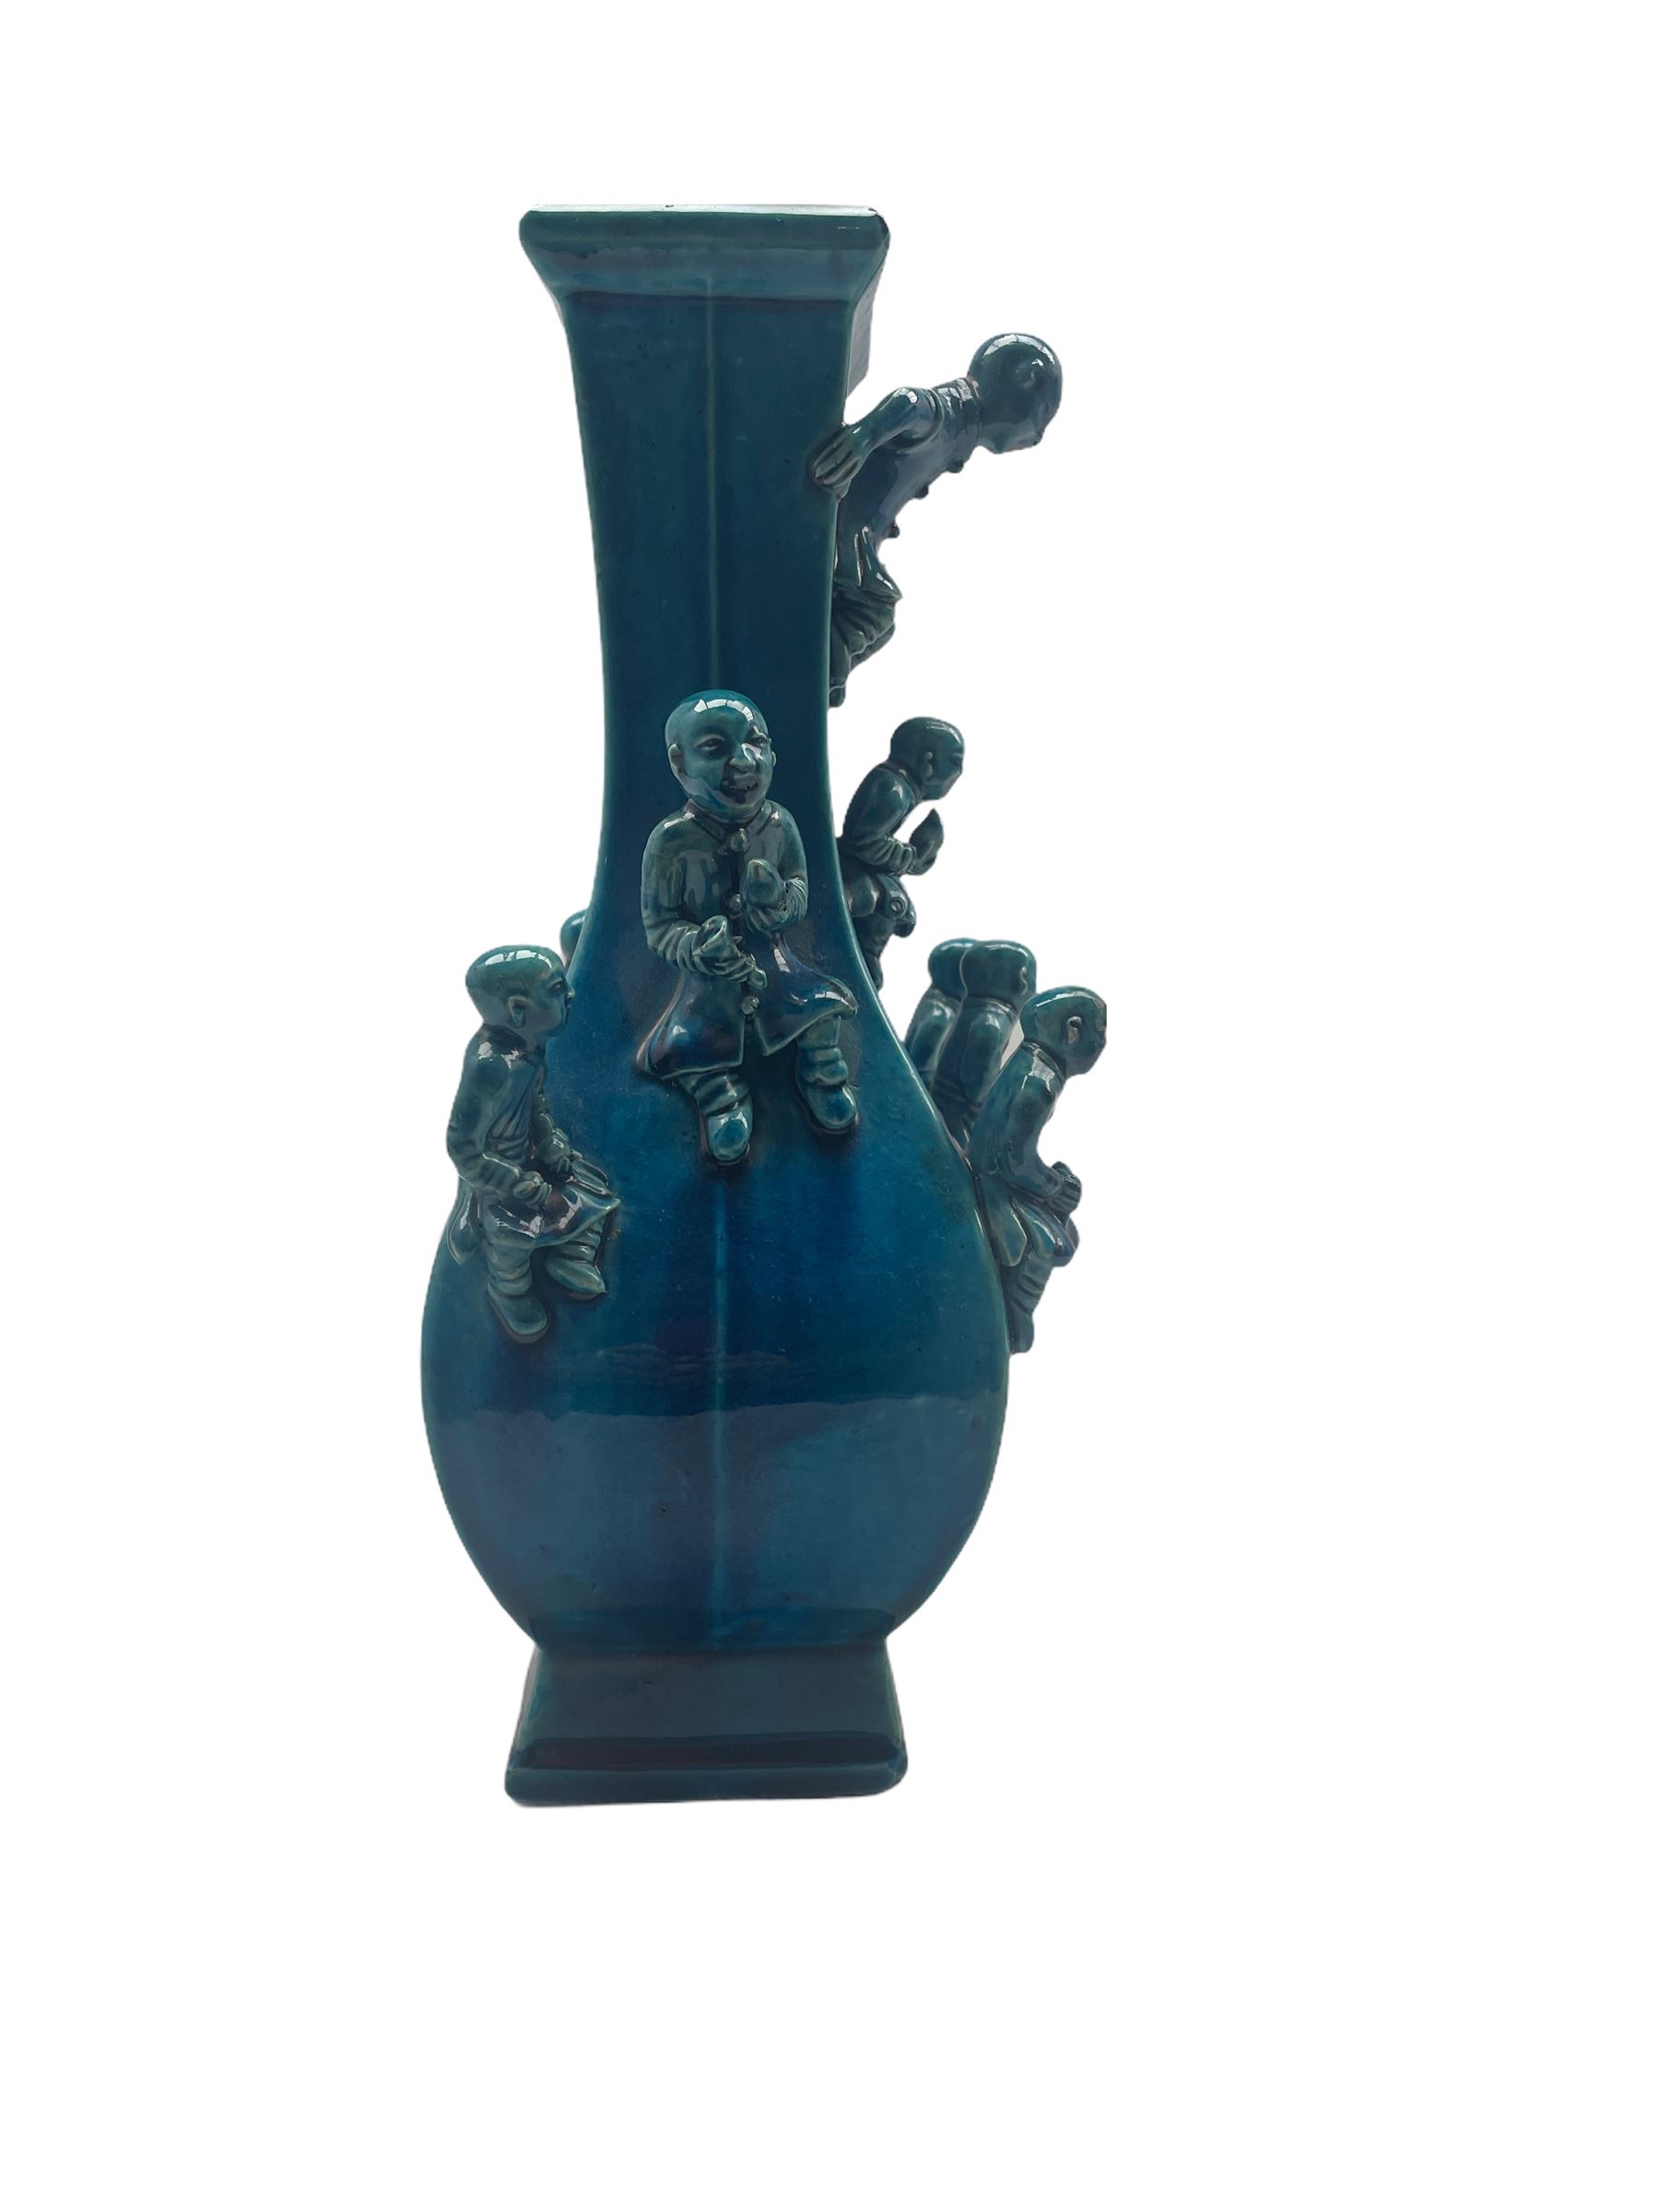 18th/19th century Chinese turquoise glazed 'Boys' vase - Image 2 of 6